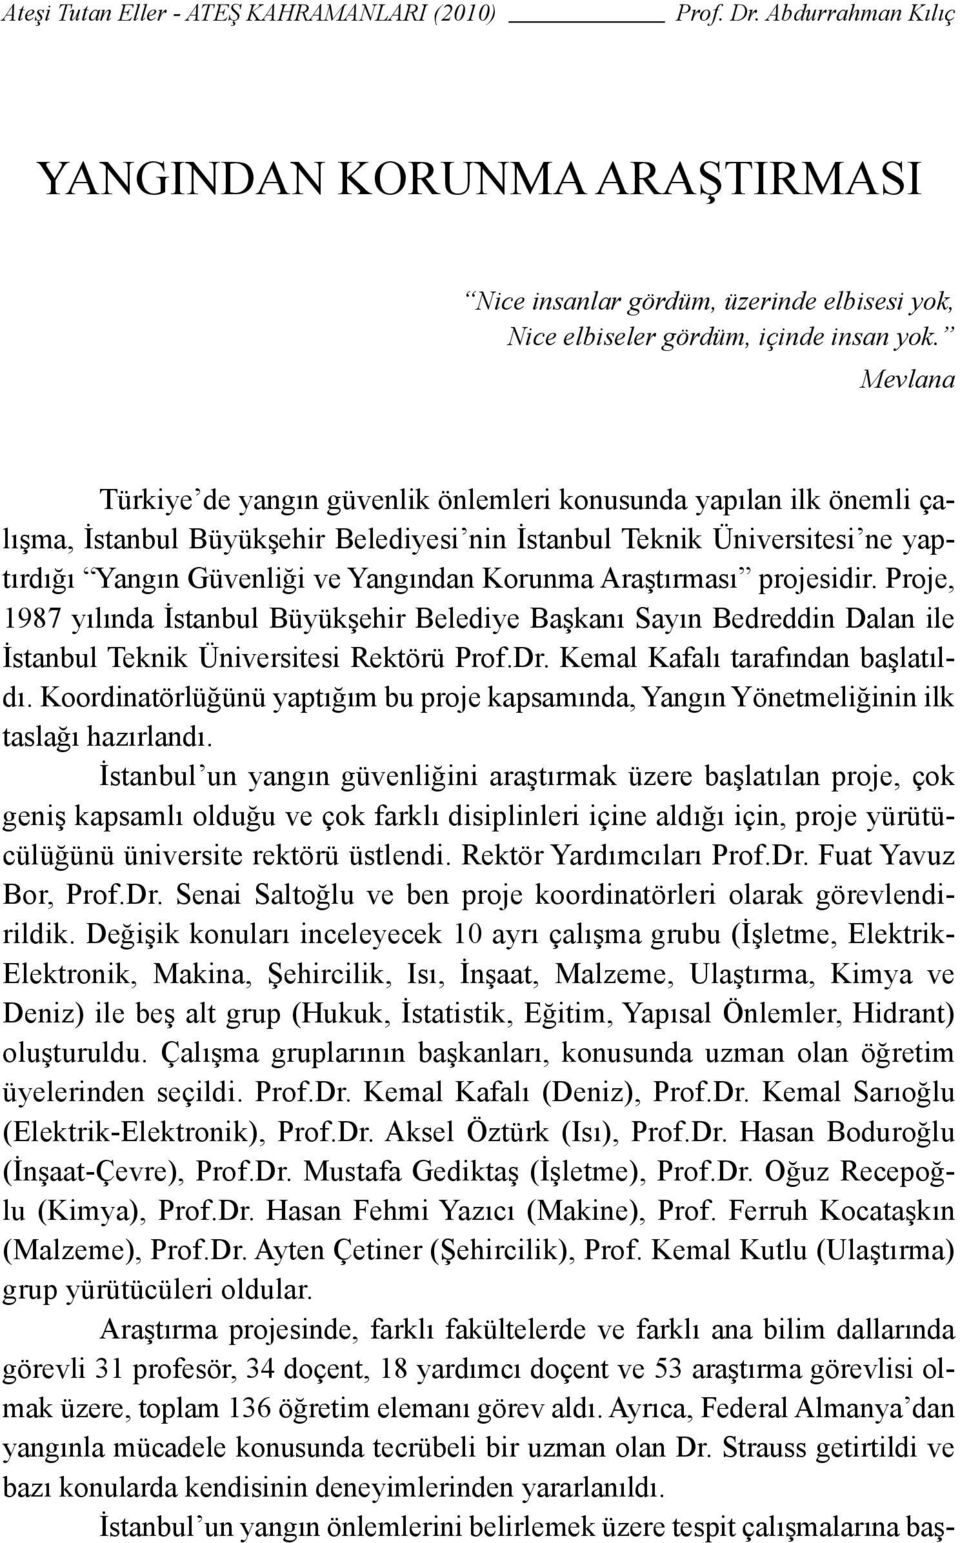 Araştırması projesidir. Proje, 1987 yılında İstanbul Büyükşehir Belediye Başkanı Sayın Bedreddin Dalan ile İstanbul Teknik Üniversitesi Rektörü Prof.Dr. Kemal Kafalı tarafından başlatıldı.